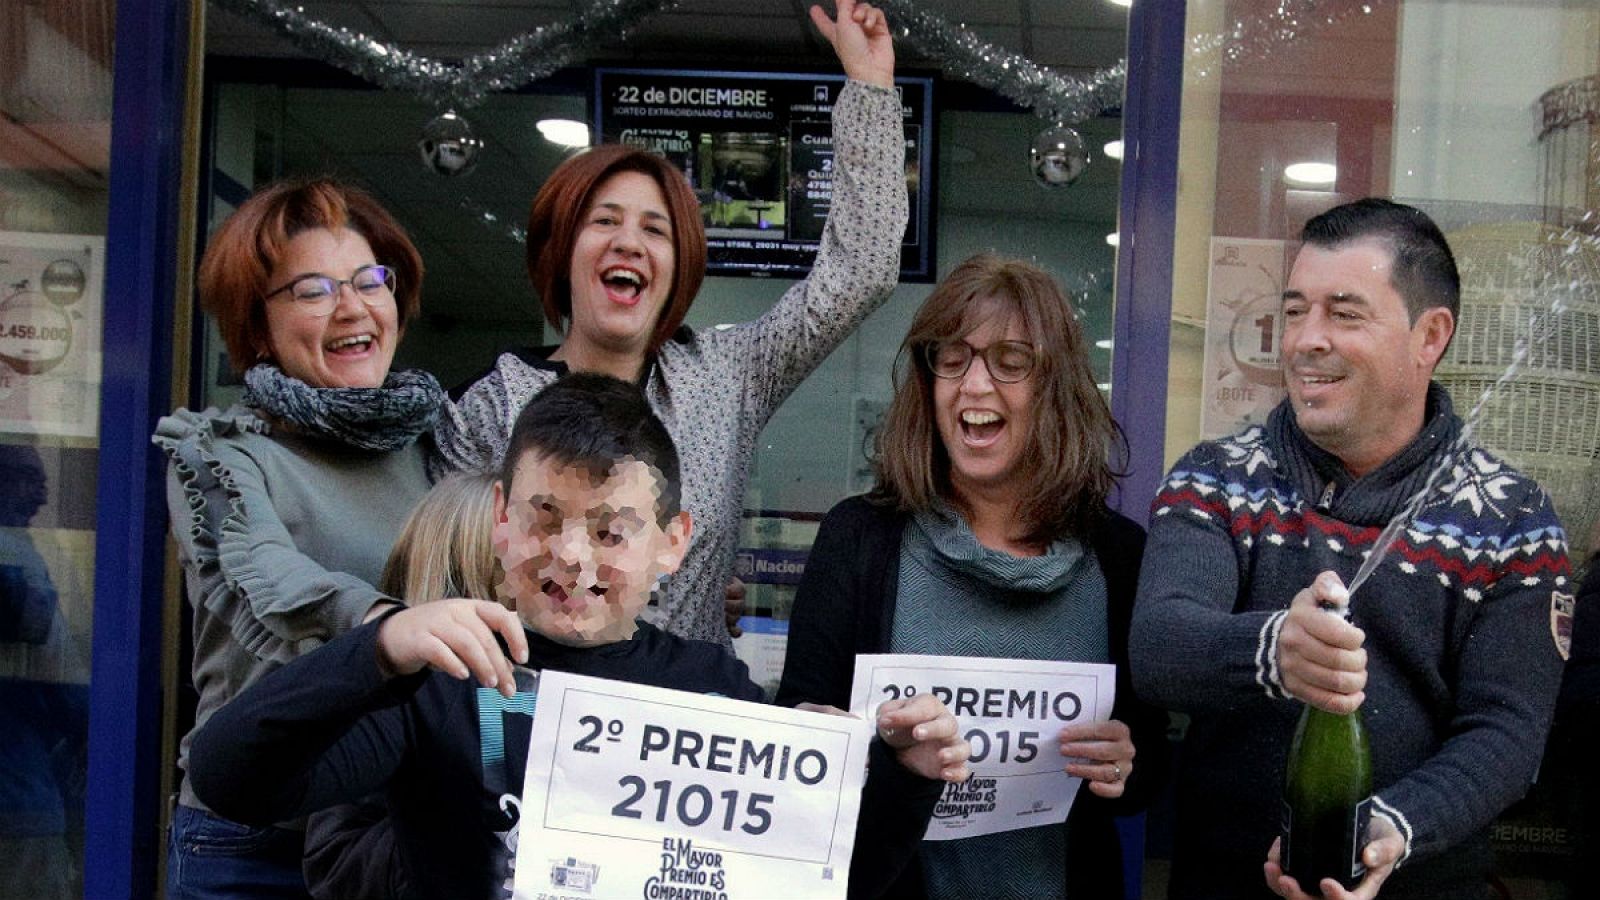 Lotería Navidad -  El lotero de Pedreguer: "Devolvimos 30 décimos del segundo" - Escuchar ahora